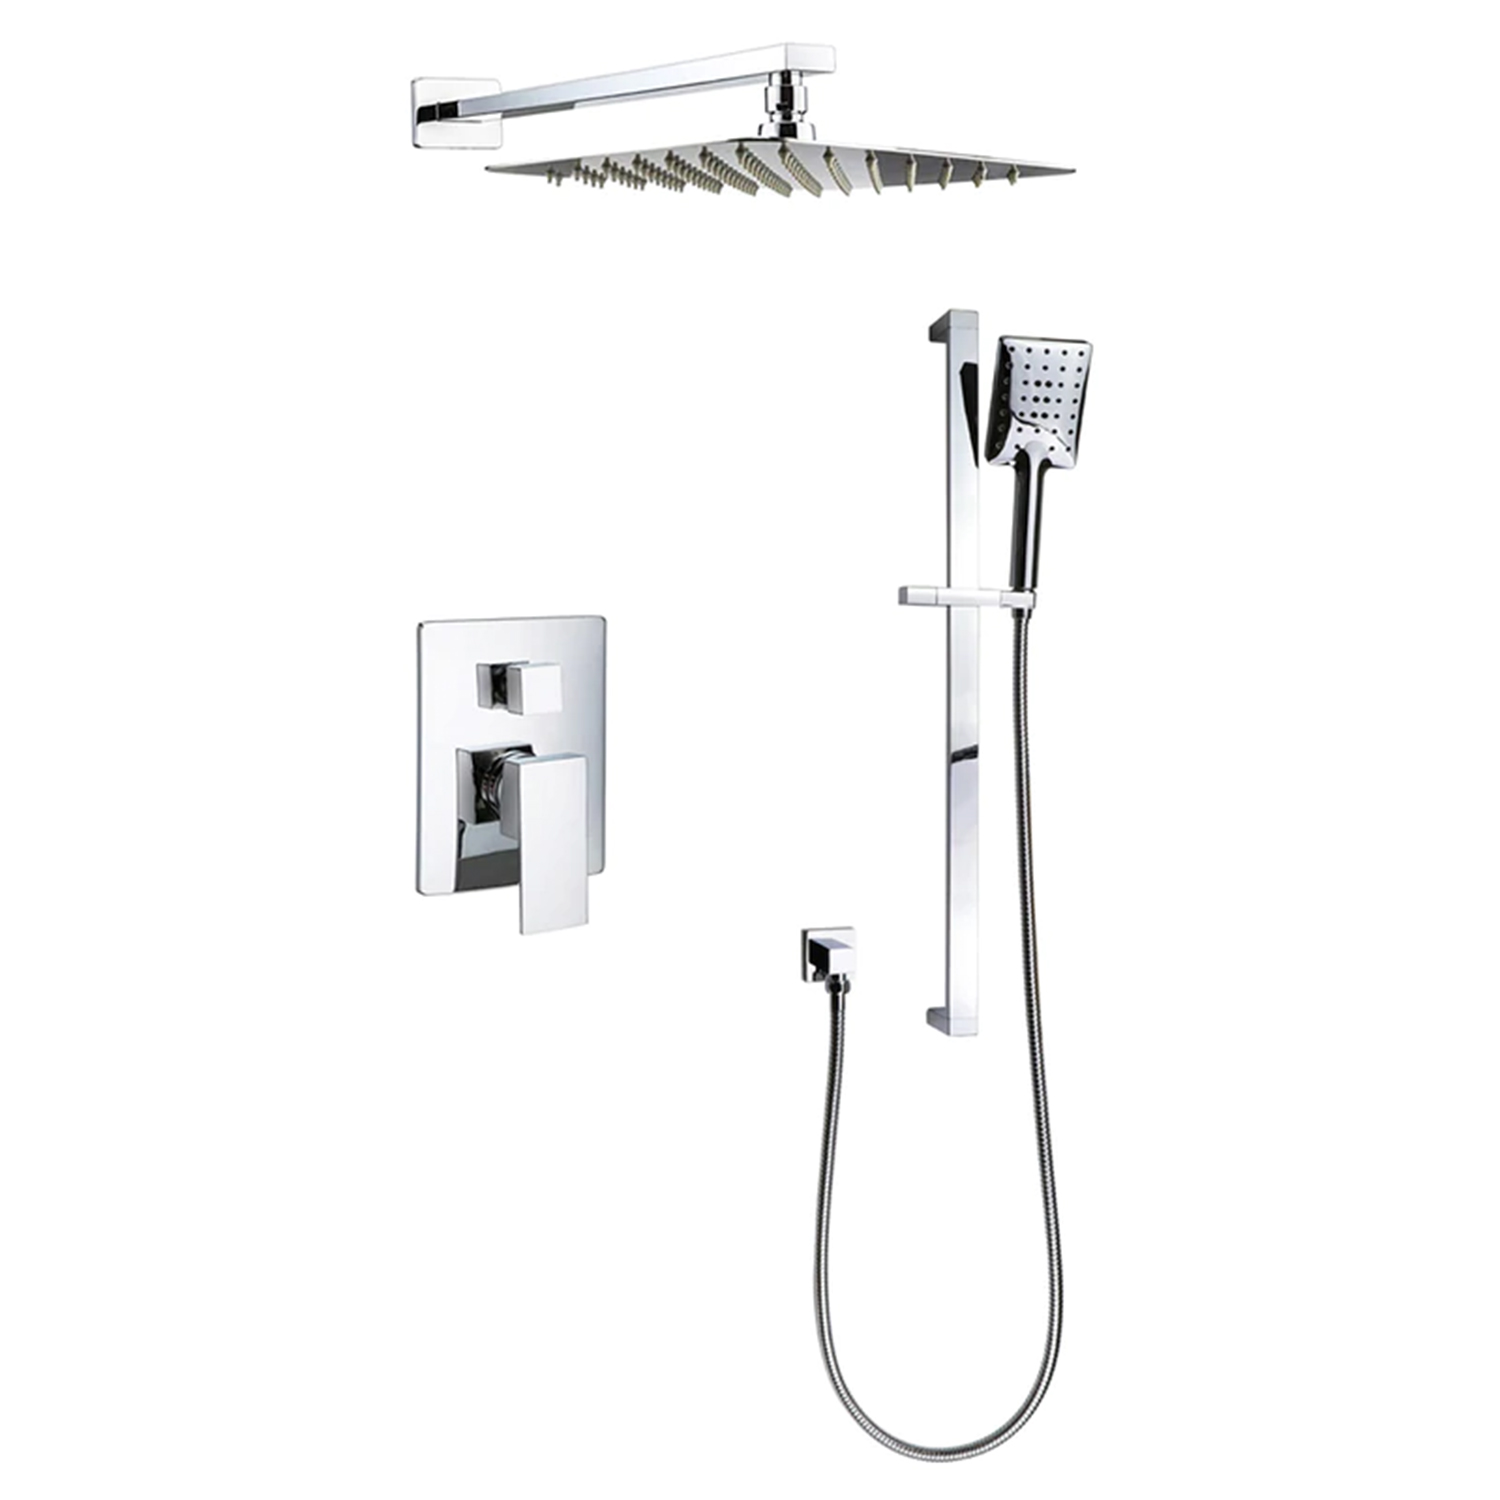 Kodaen F54123CP Shower mixer Chrome Plated Shower Faucet - 2-Way Shower System